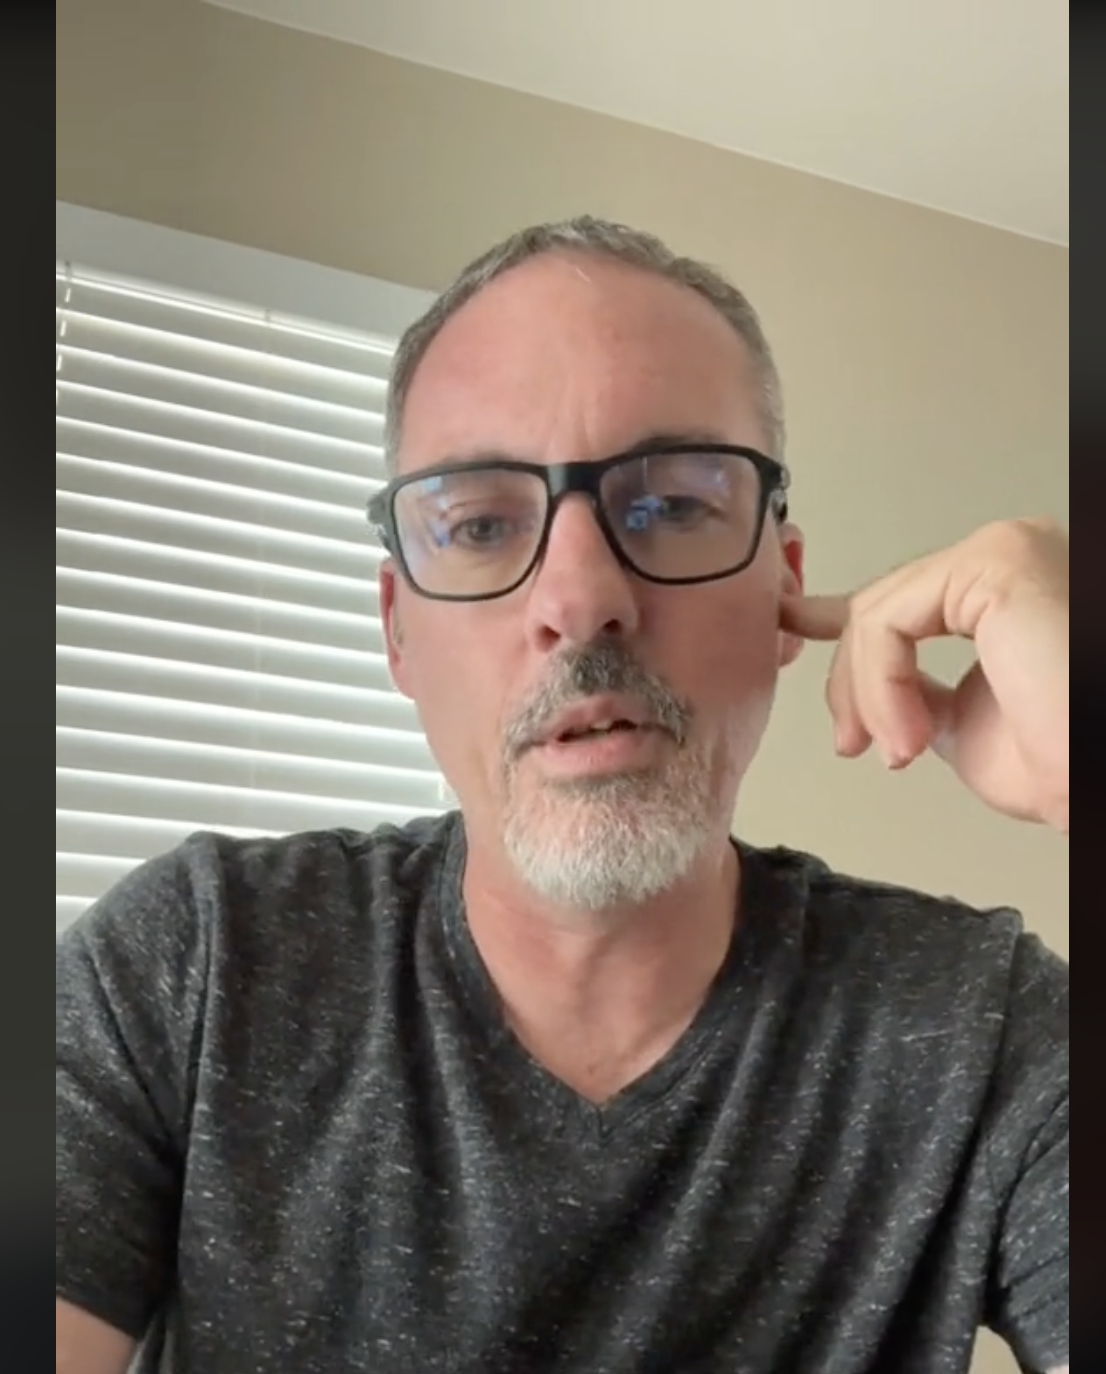 Christian compartiendo su experiencia de pesadilla en una cita, como se ve en un vídeo del 10 de septiembre de 2022 | Foto: TikTok/christiannollinger